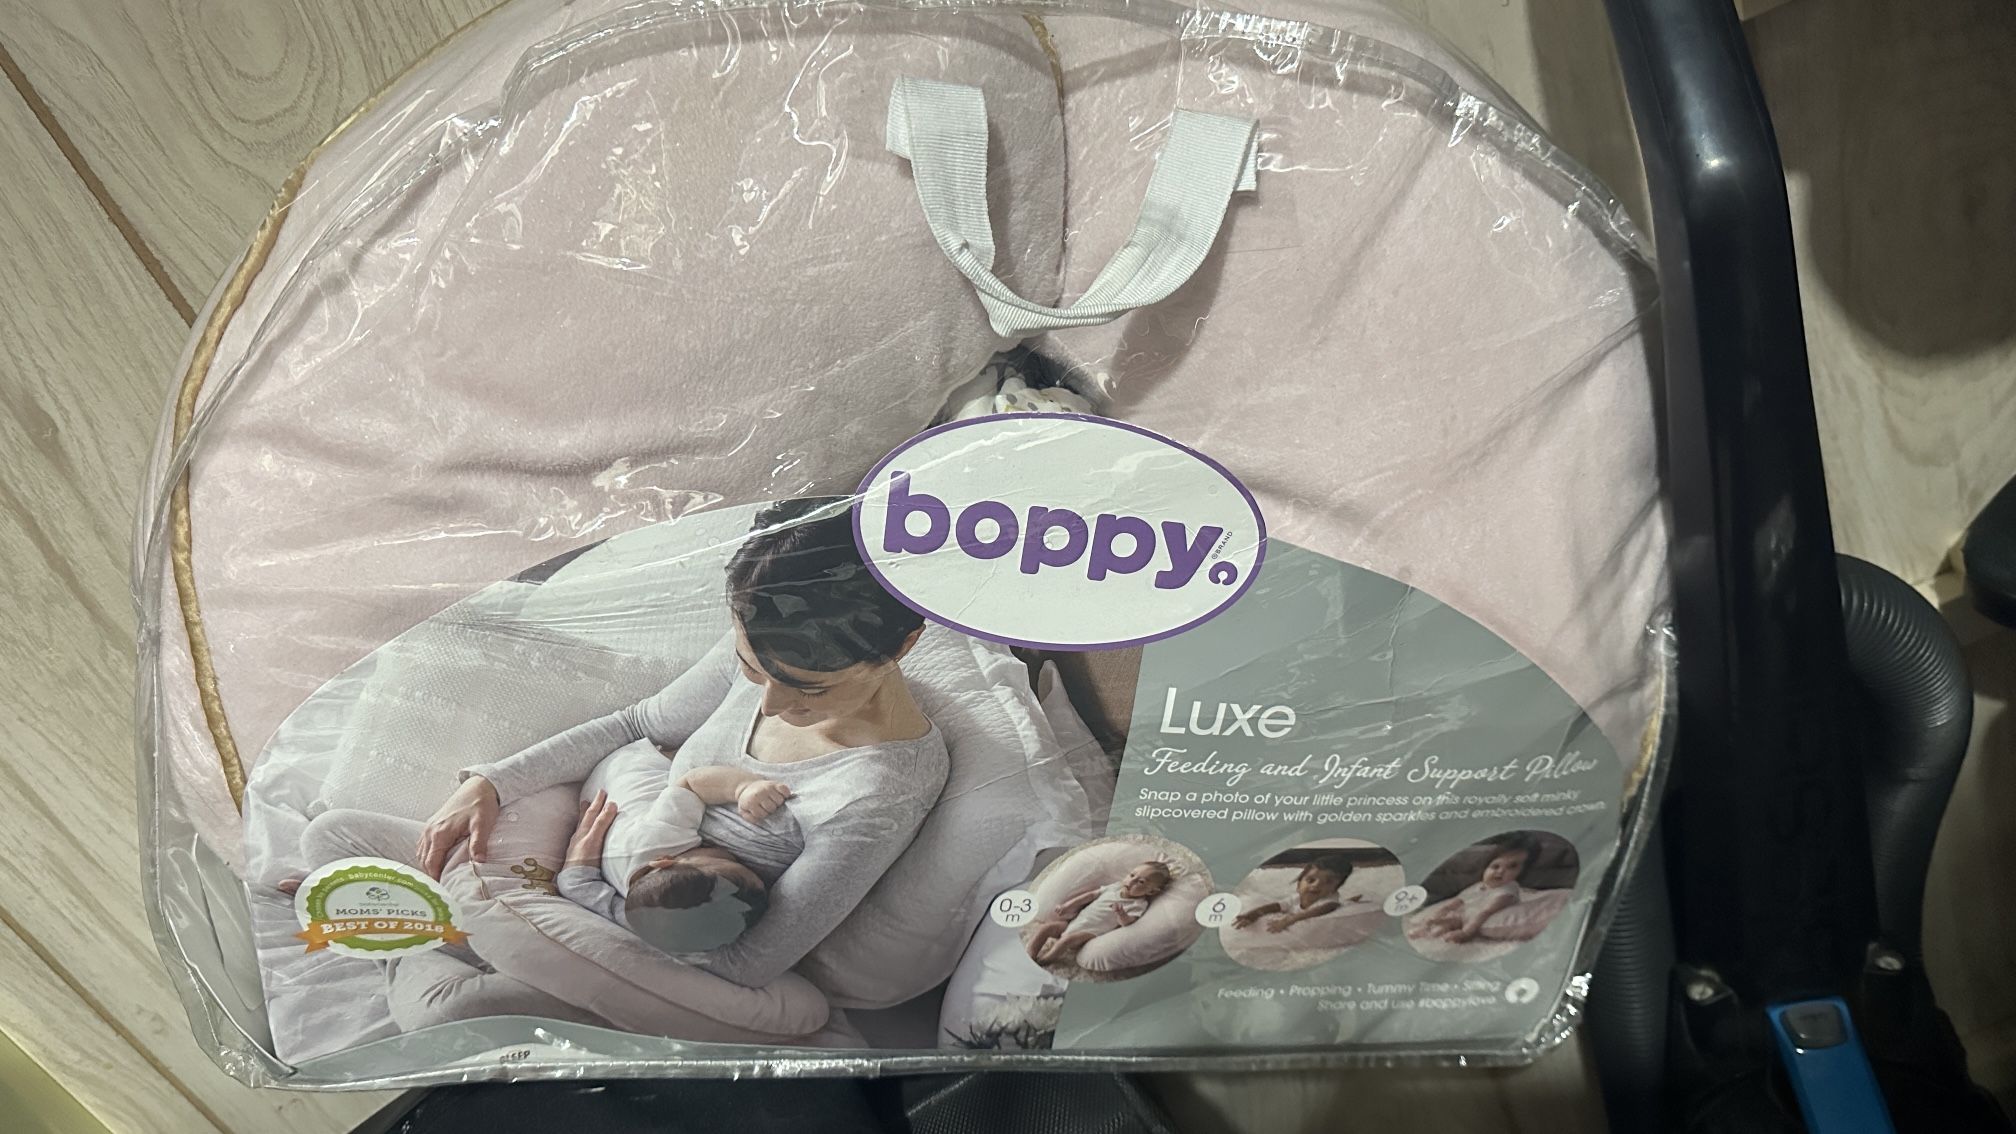 Boppy Nursing pillow